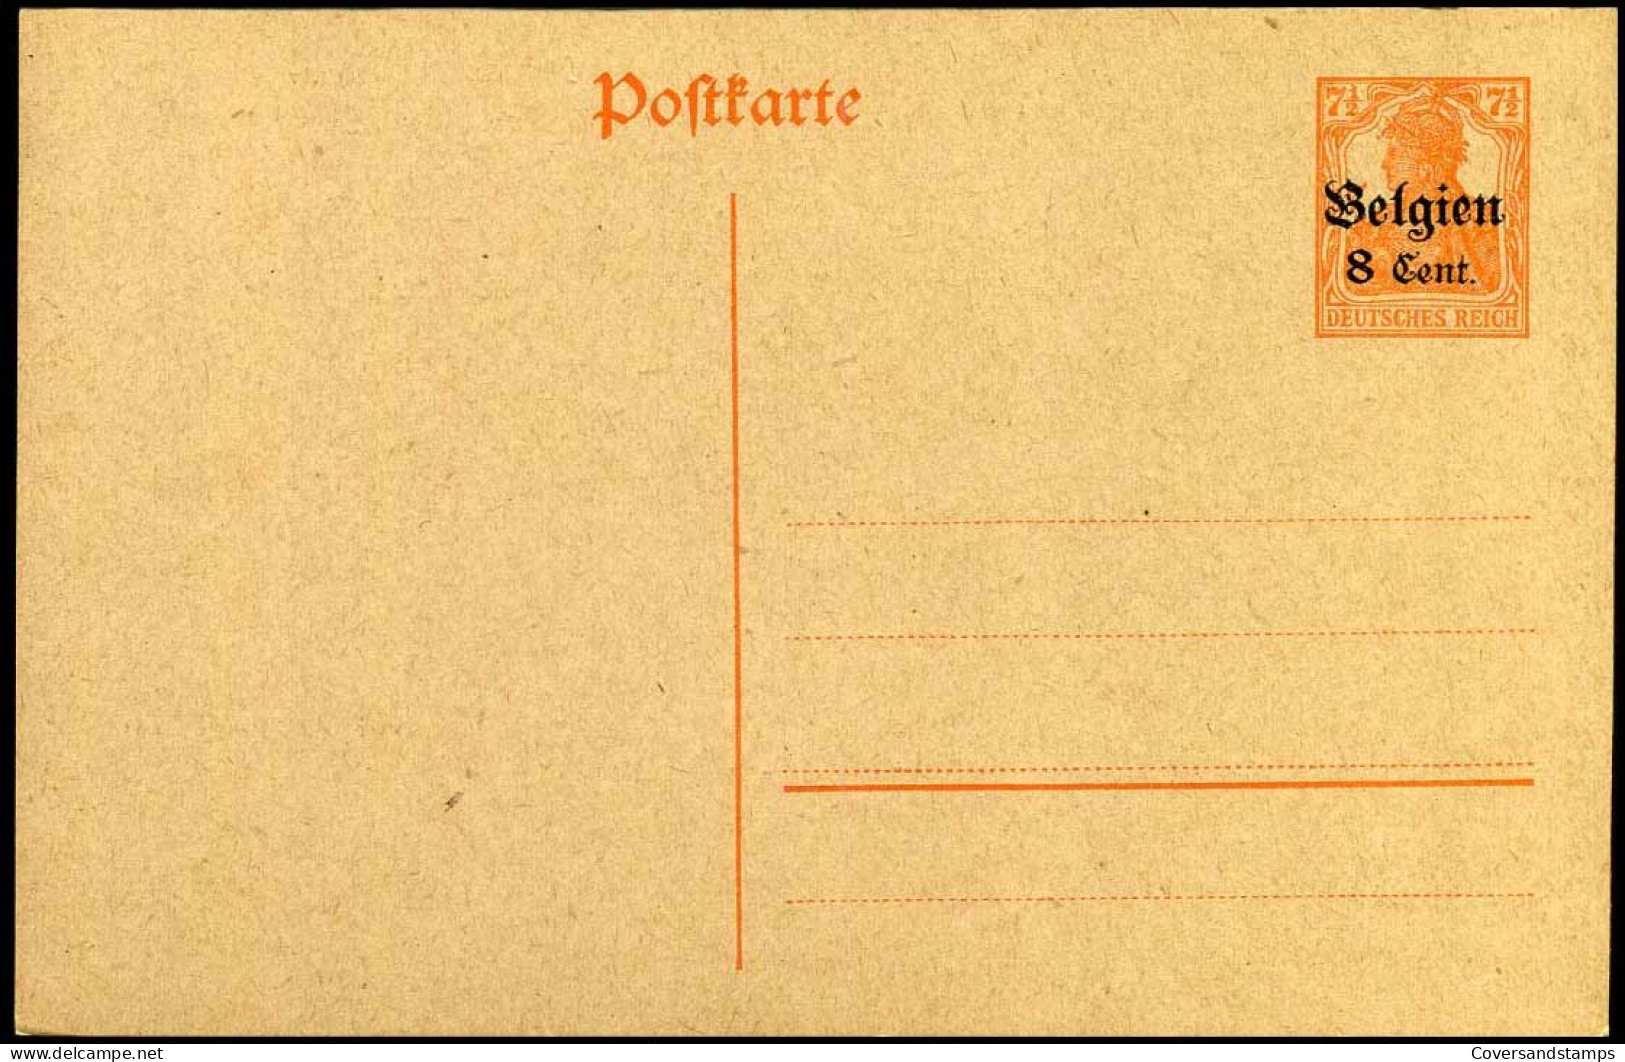 Postkarte - Belgien 8 Cent - Cartes Postales 1909-1934